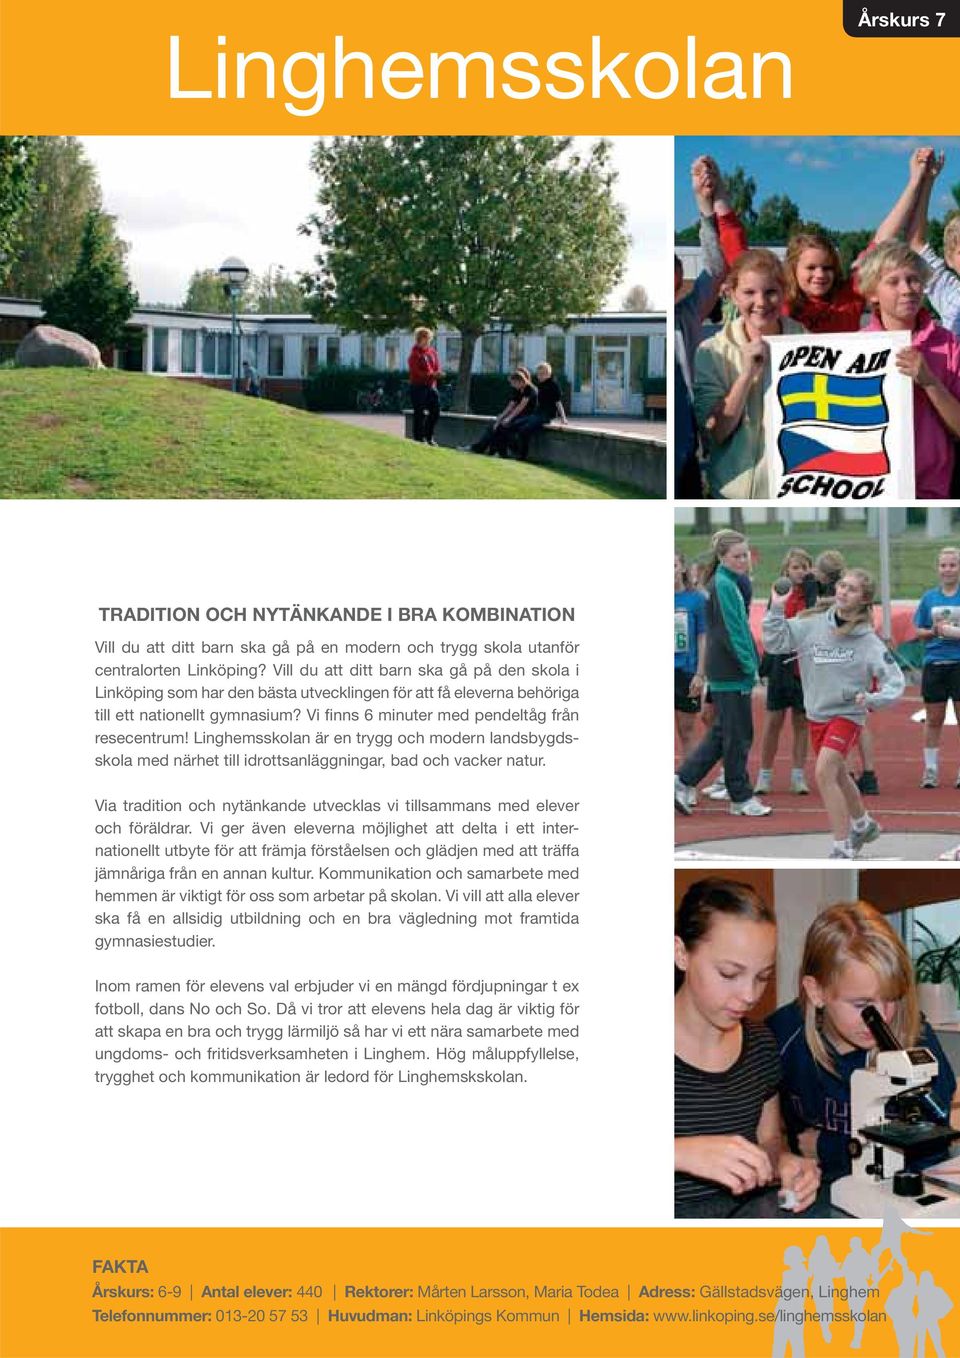 Linghemsskolan är en trygg och modern landsbygdsskola med närhet till idrottsanläggningar, bad och vacker natur. Via tradition och nytänkande utvecklas vi tillsammans med elever och föräldrar.